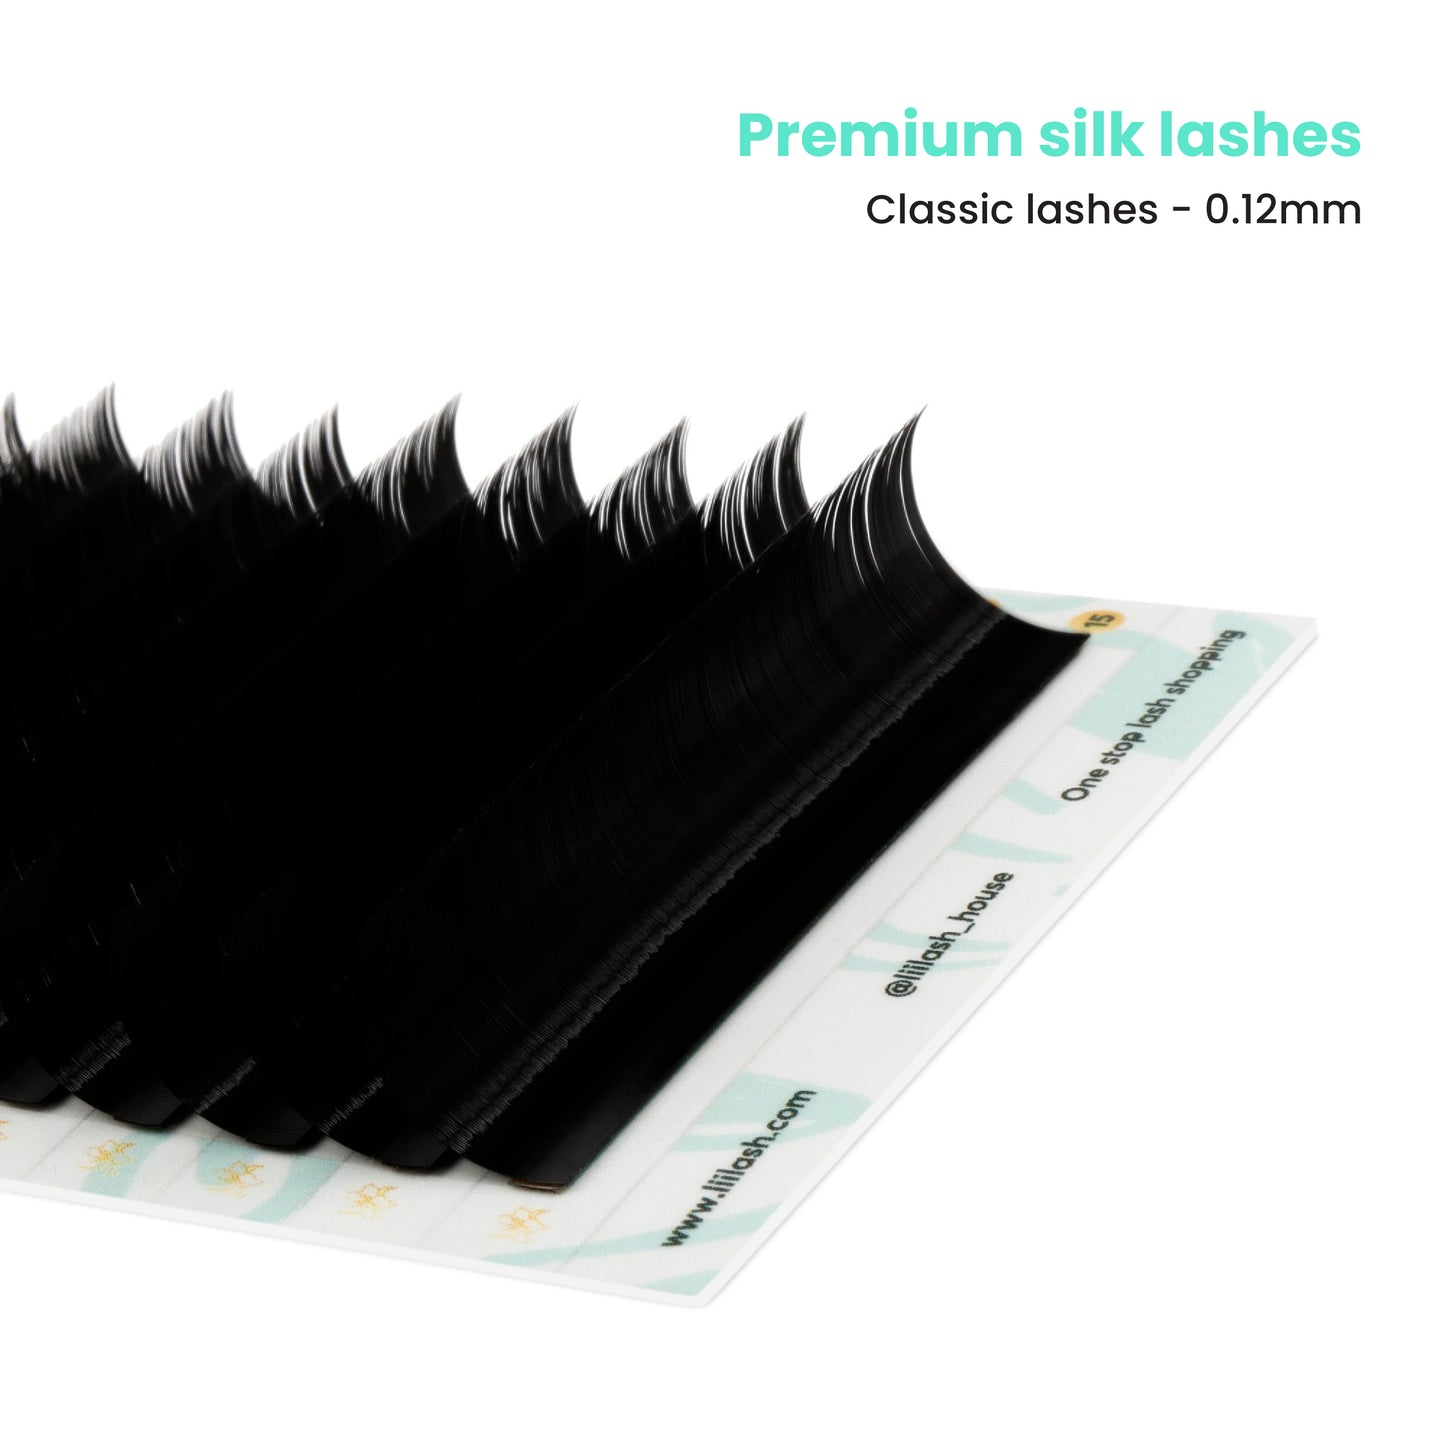 Premium Mink classic lashes 0.12mm